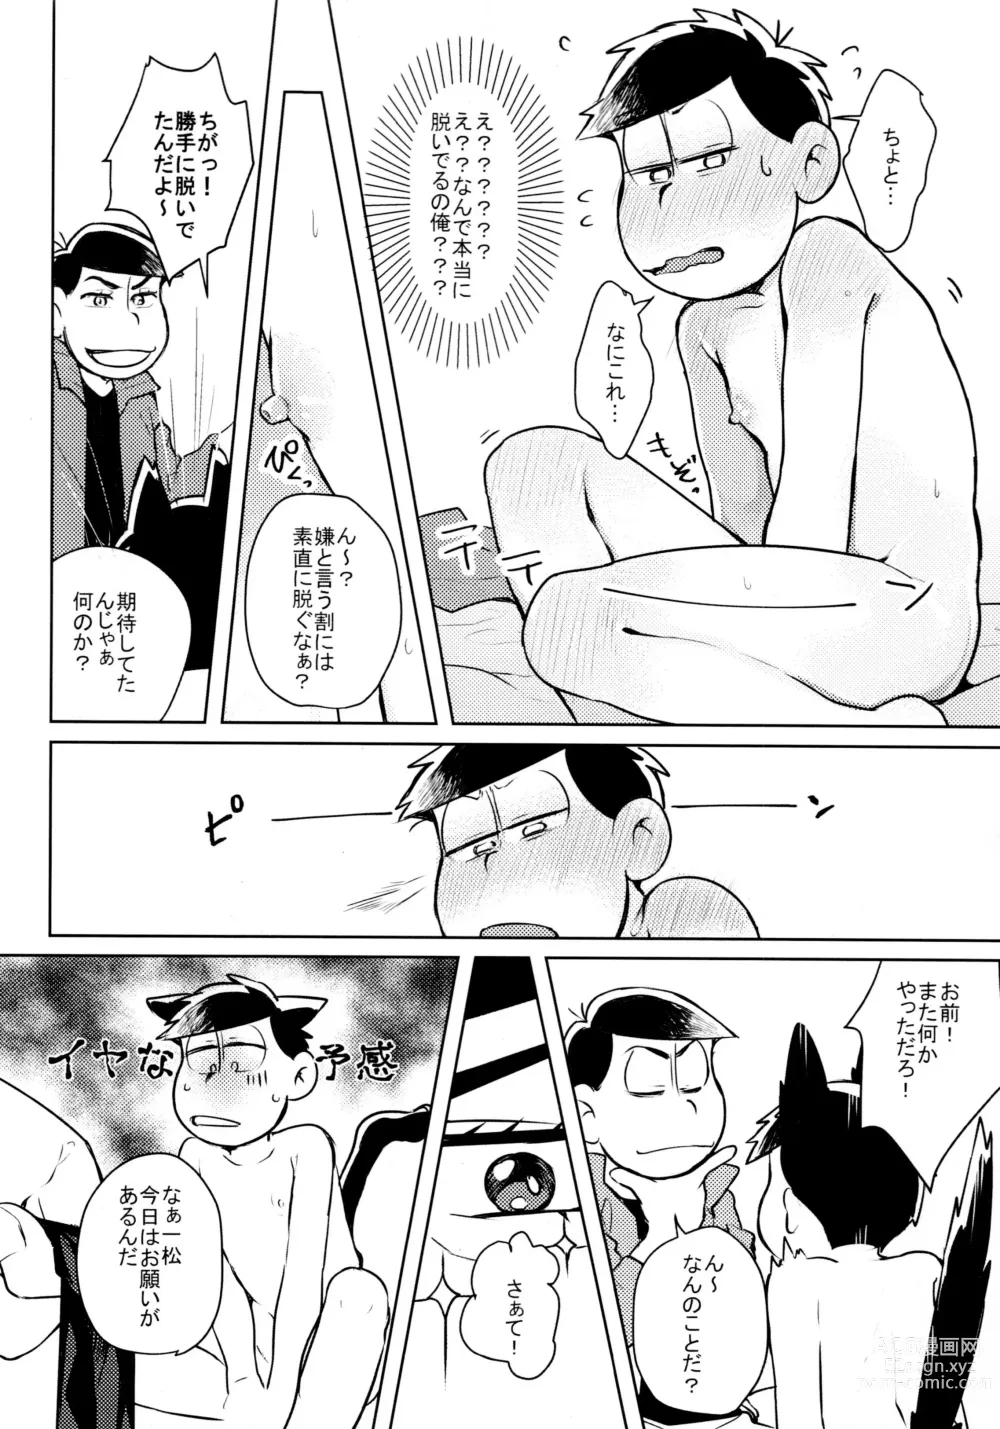 Page 7 of doujinshi Hyoushi Koukan Kikaku Goudoushi Matsuno Ichimatsu Onii-chan no Iinari ni Naranai